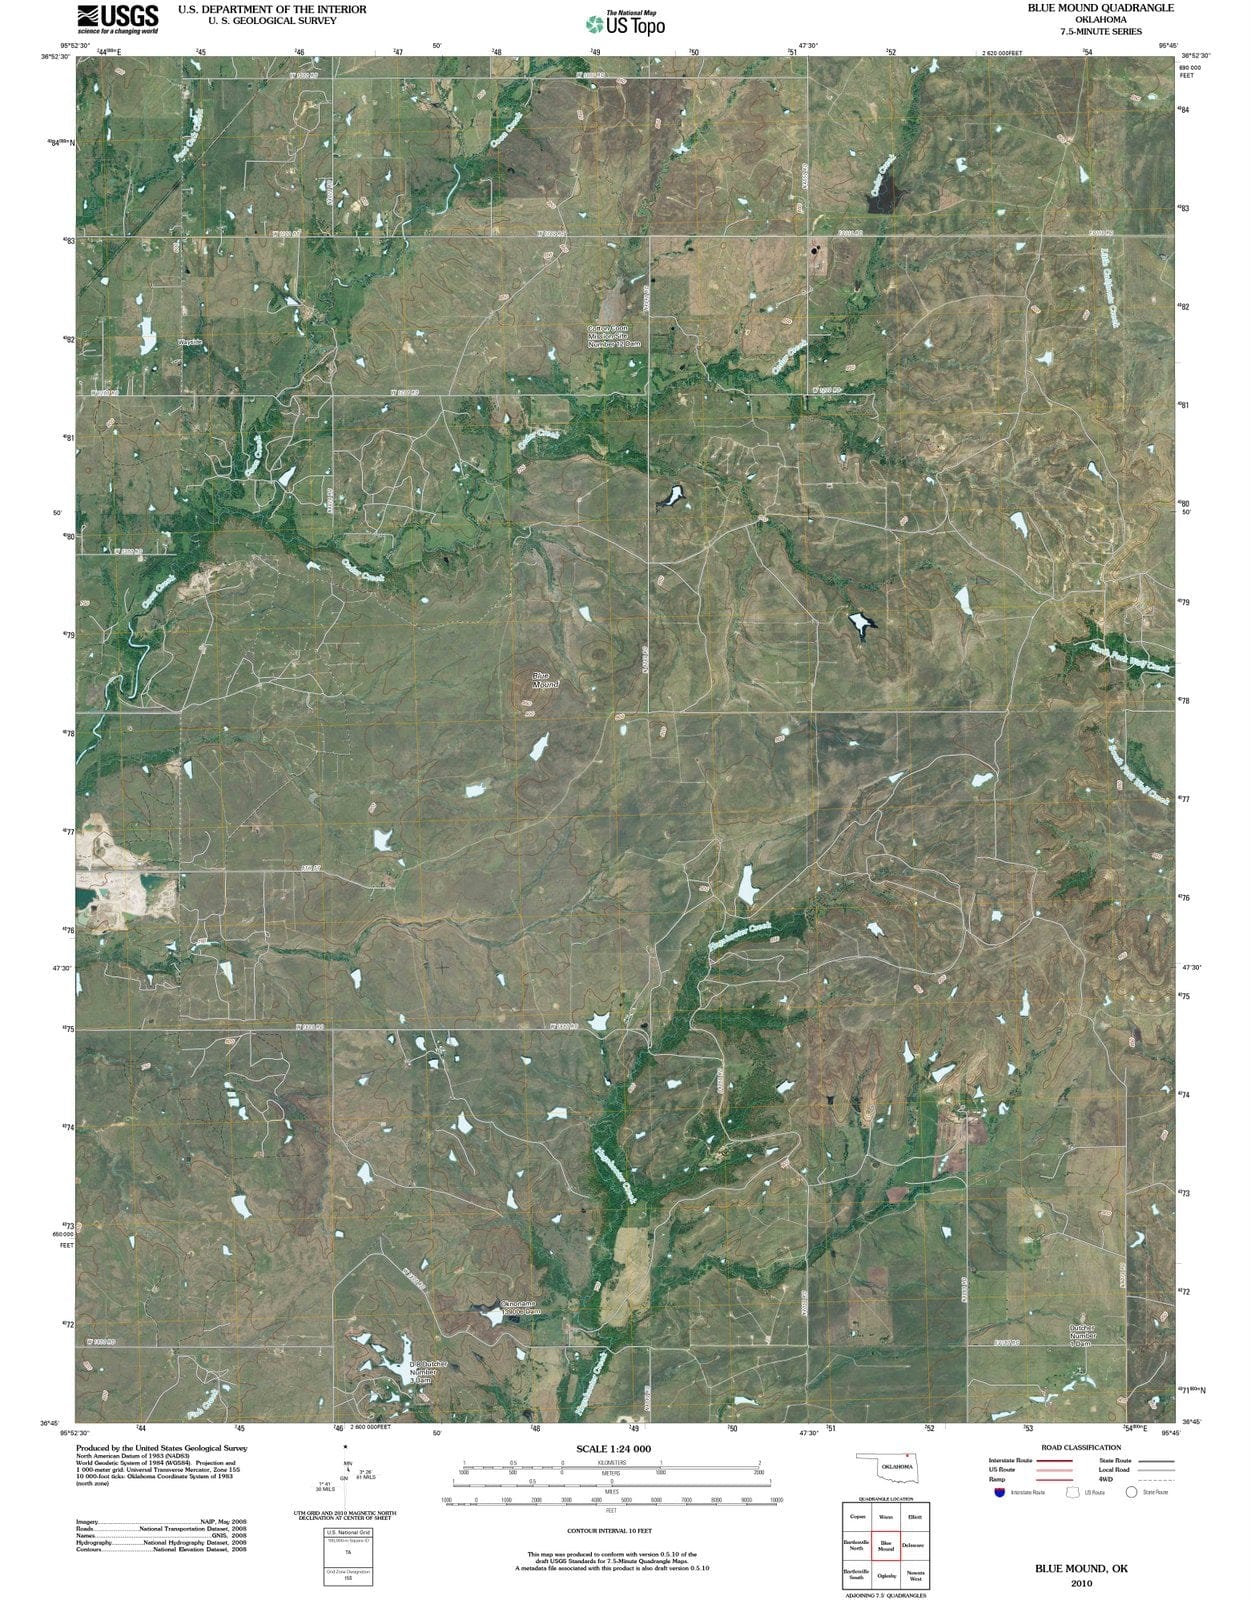 2010 Blue Mound, OK - Oklahoma - USGS Topographic Map